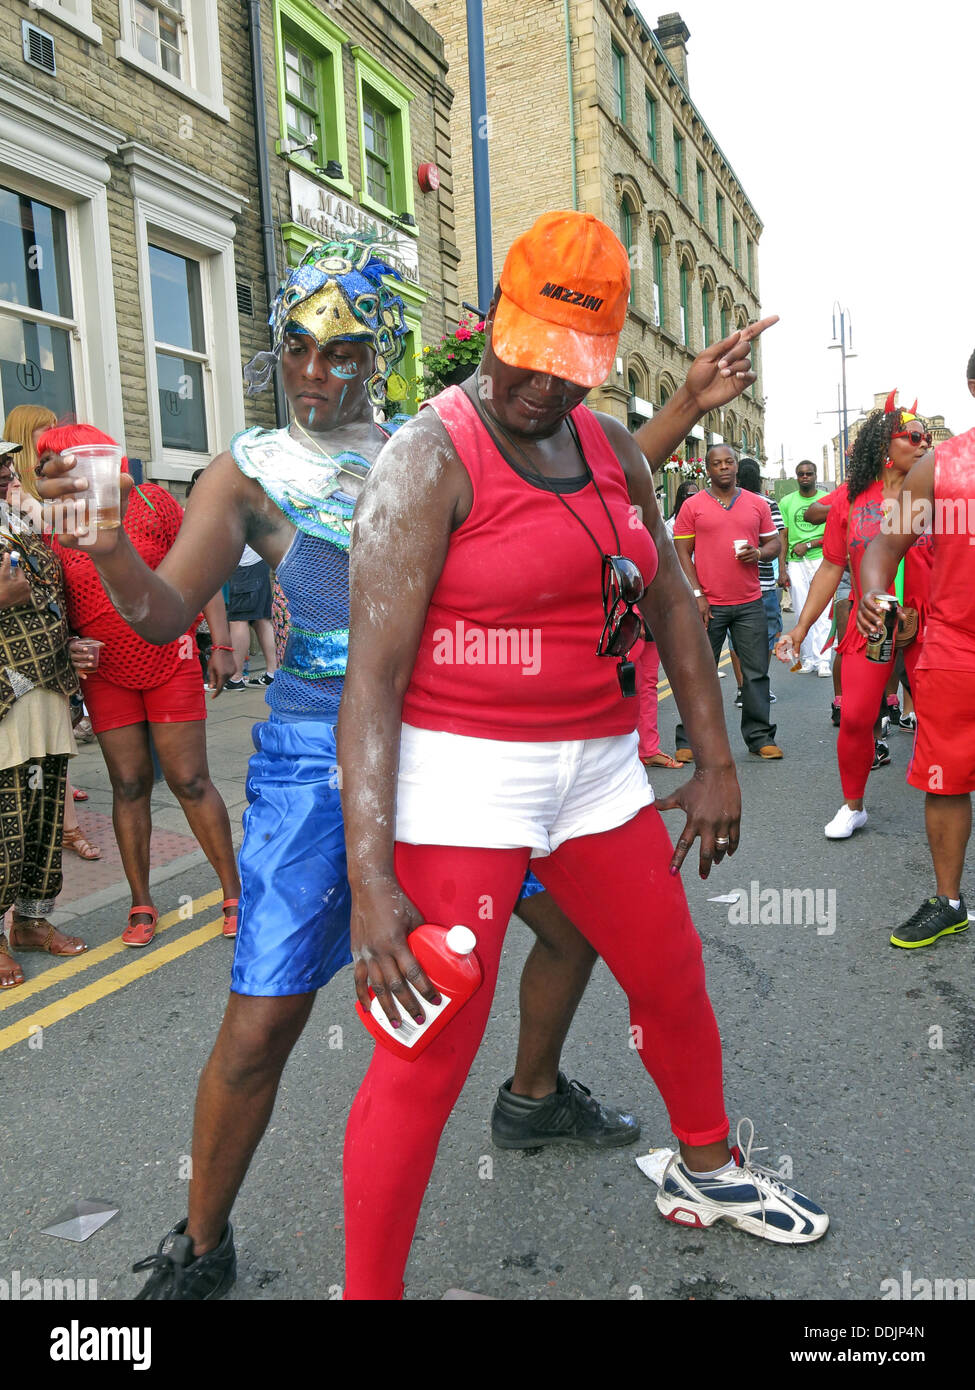 Danseurs costumés de talc de Huddersfield Carnival parade 2013 fête de rue Africains des Caraïbes Banque D'Images